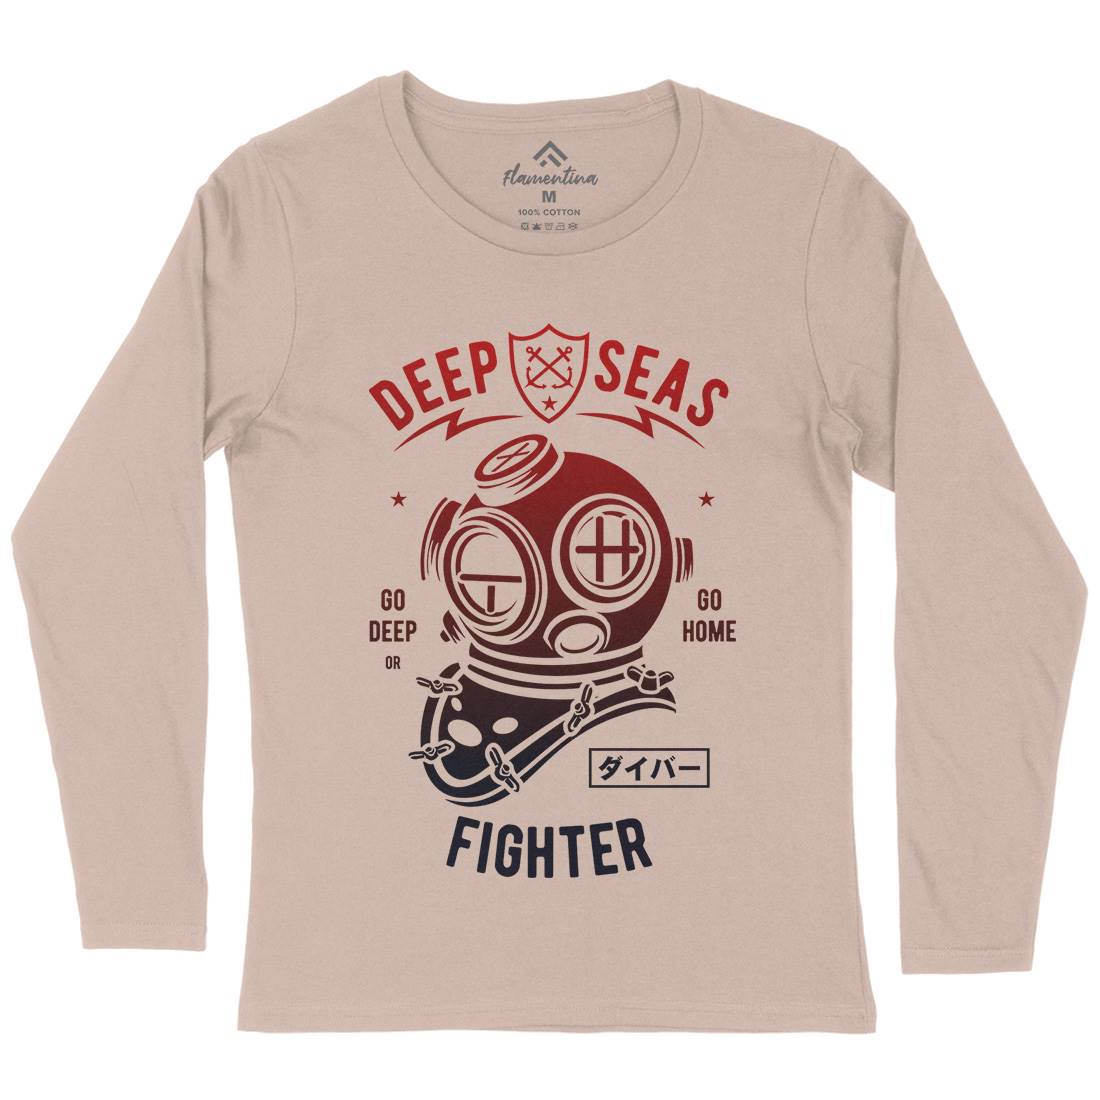 Deep Seas Fighter Womens Long Sleeve T-Shirt Navy A223